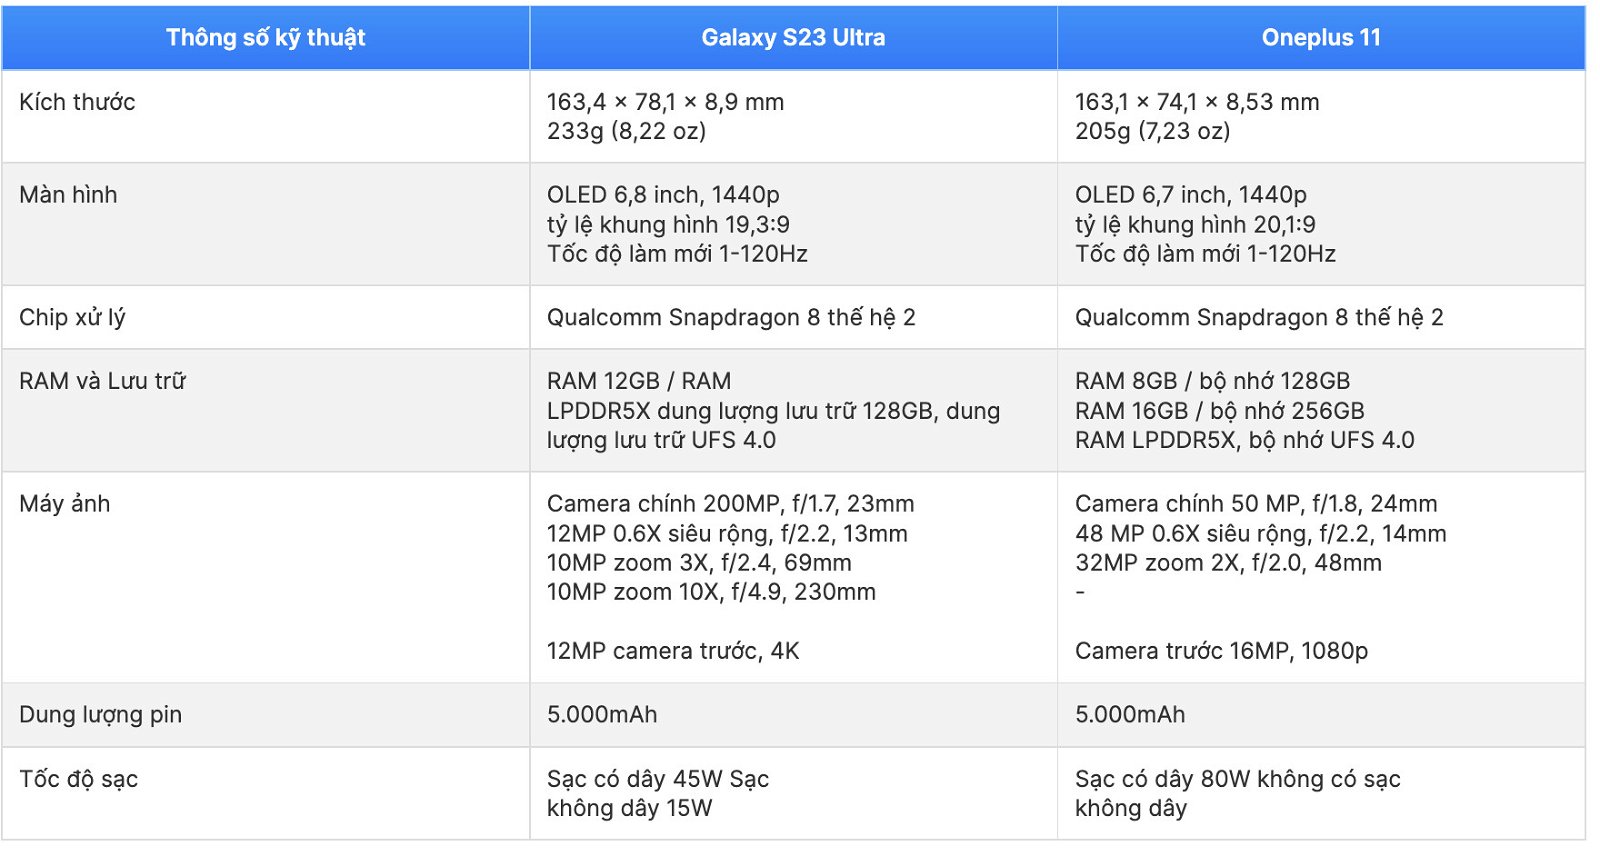 Cấu hình Galaxy S23 series và OnePlus 11 đều được cung cấp sức mạnh từ chip Snapdragon 8 Gen 2 